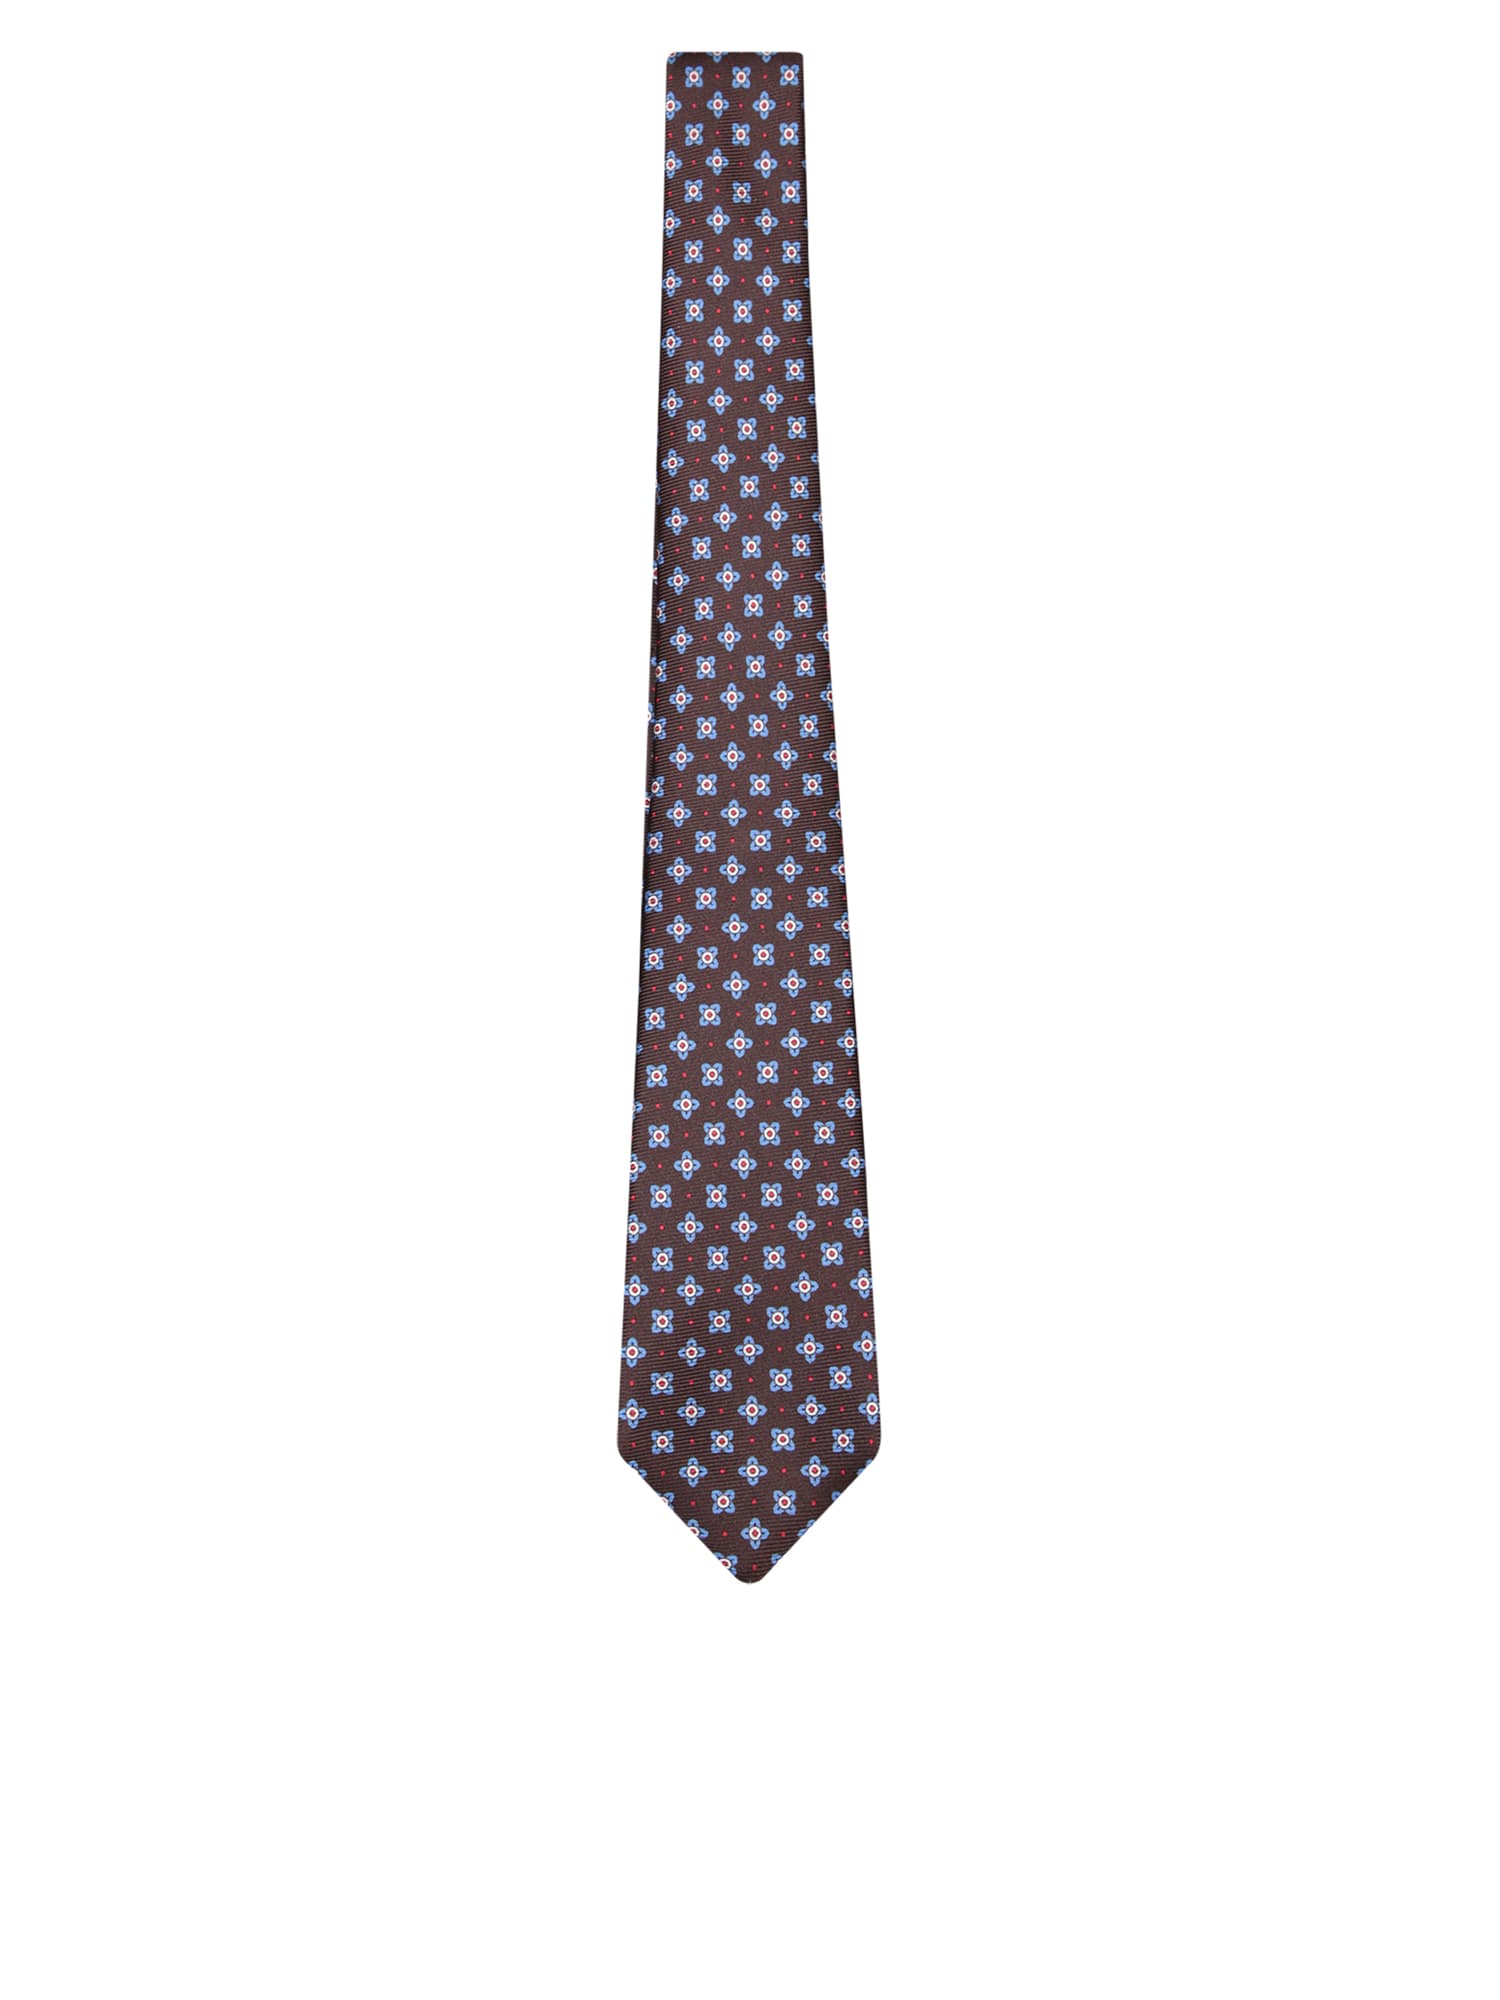 Brown/blue Patterned Tie